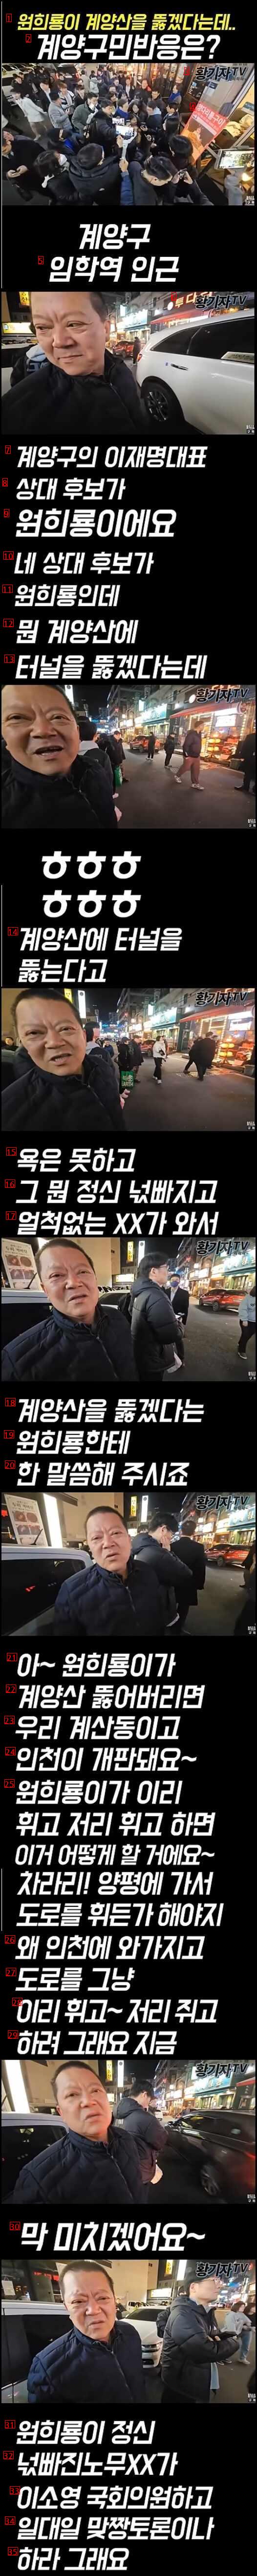 계양구 주민의 원희룡 반응 ㅋㅋㅋ